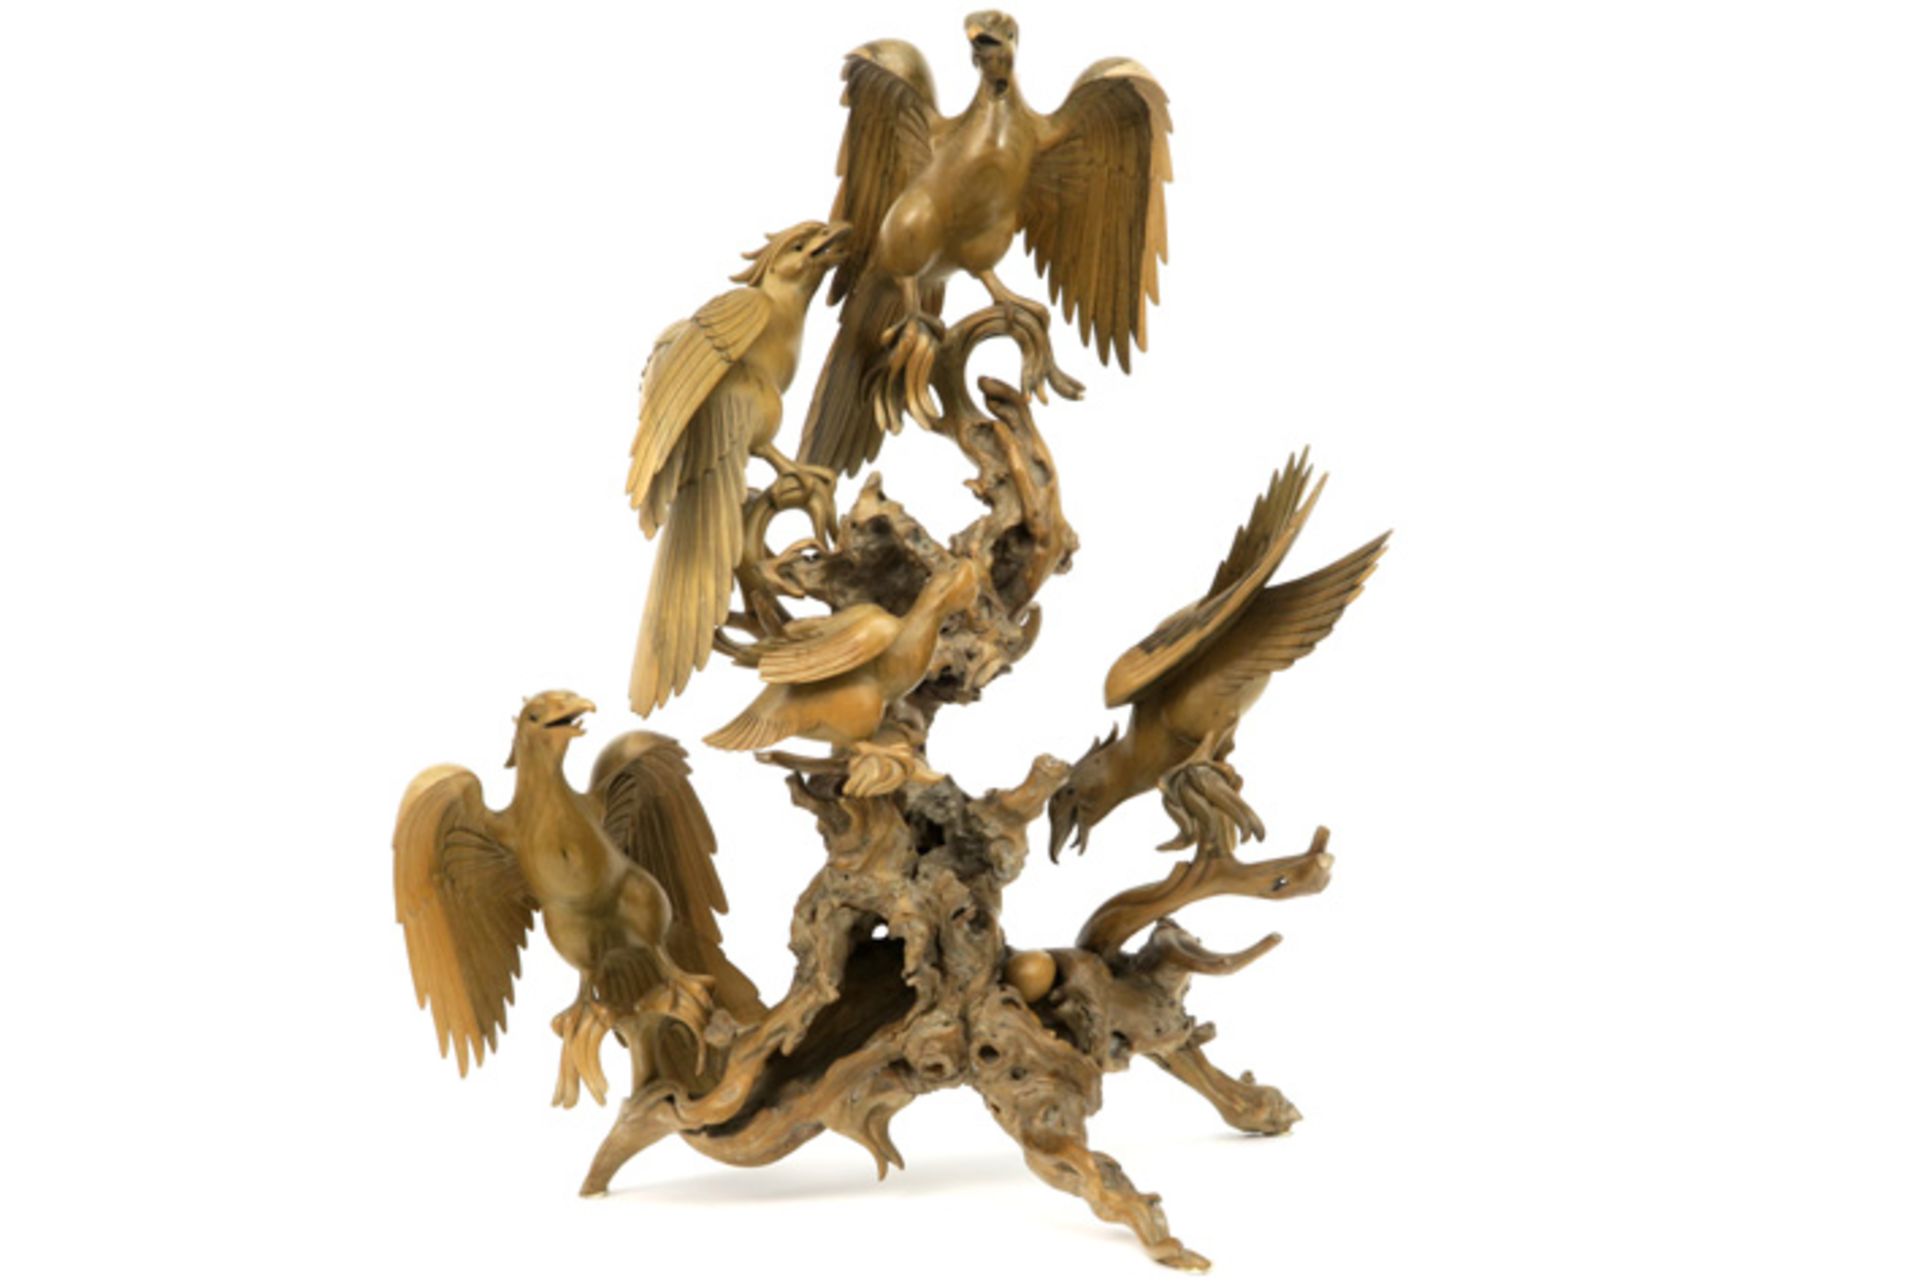 oriental heartwood sculpture with five birds||Oosterse sculptuur in hout (kernhout) met vijf